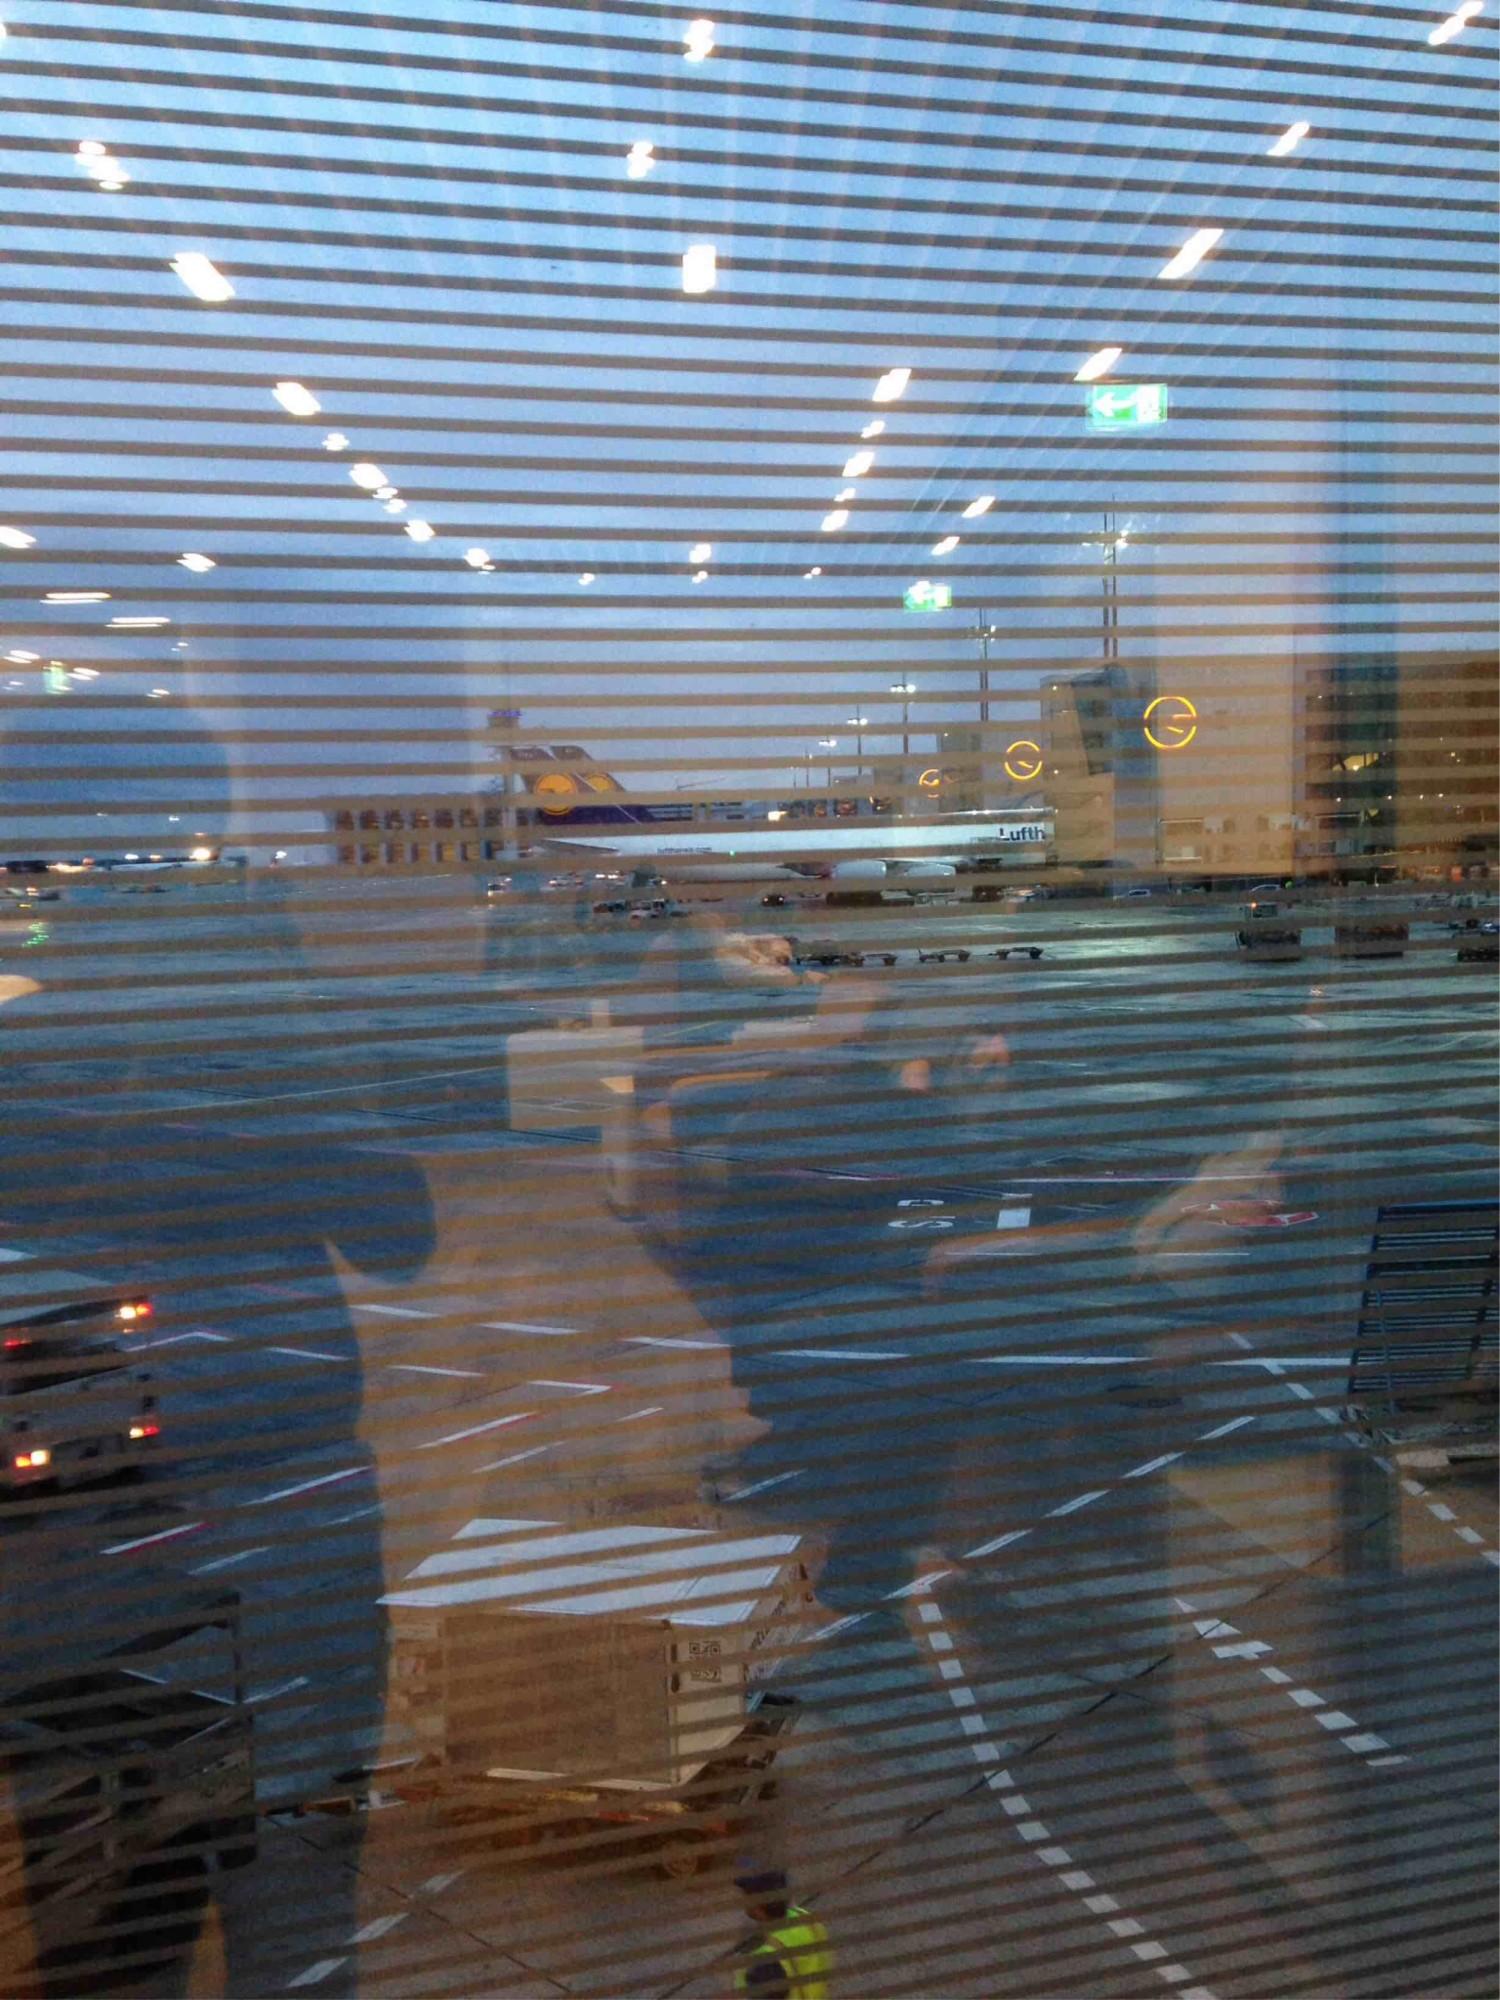 Lufthansa Business Lounge (Schengen, Gate A13) image 7 of 13